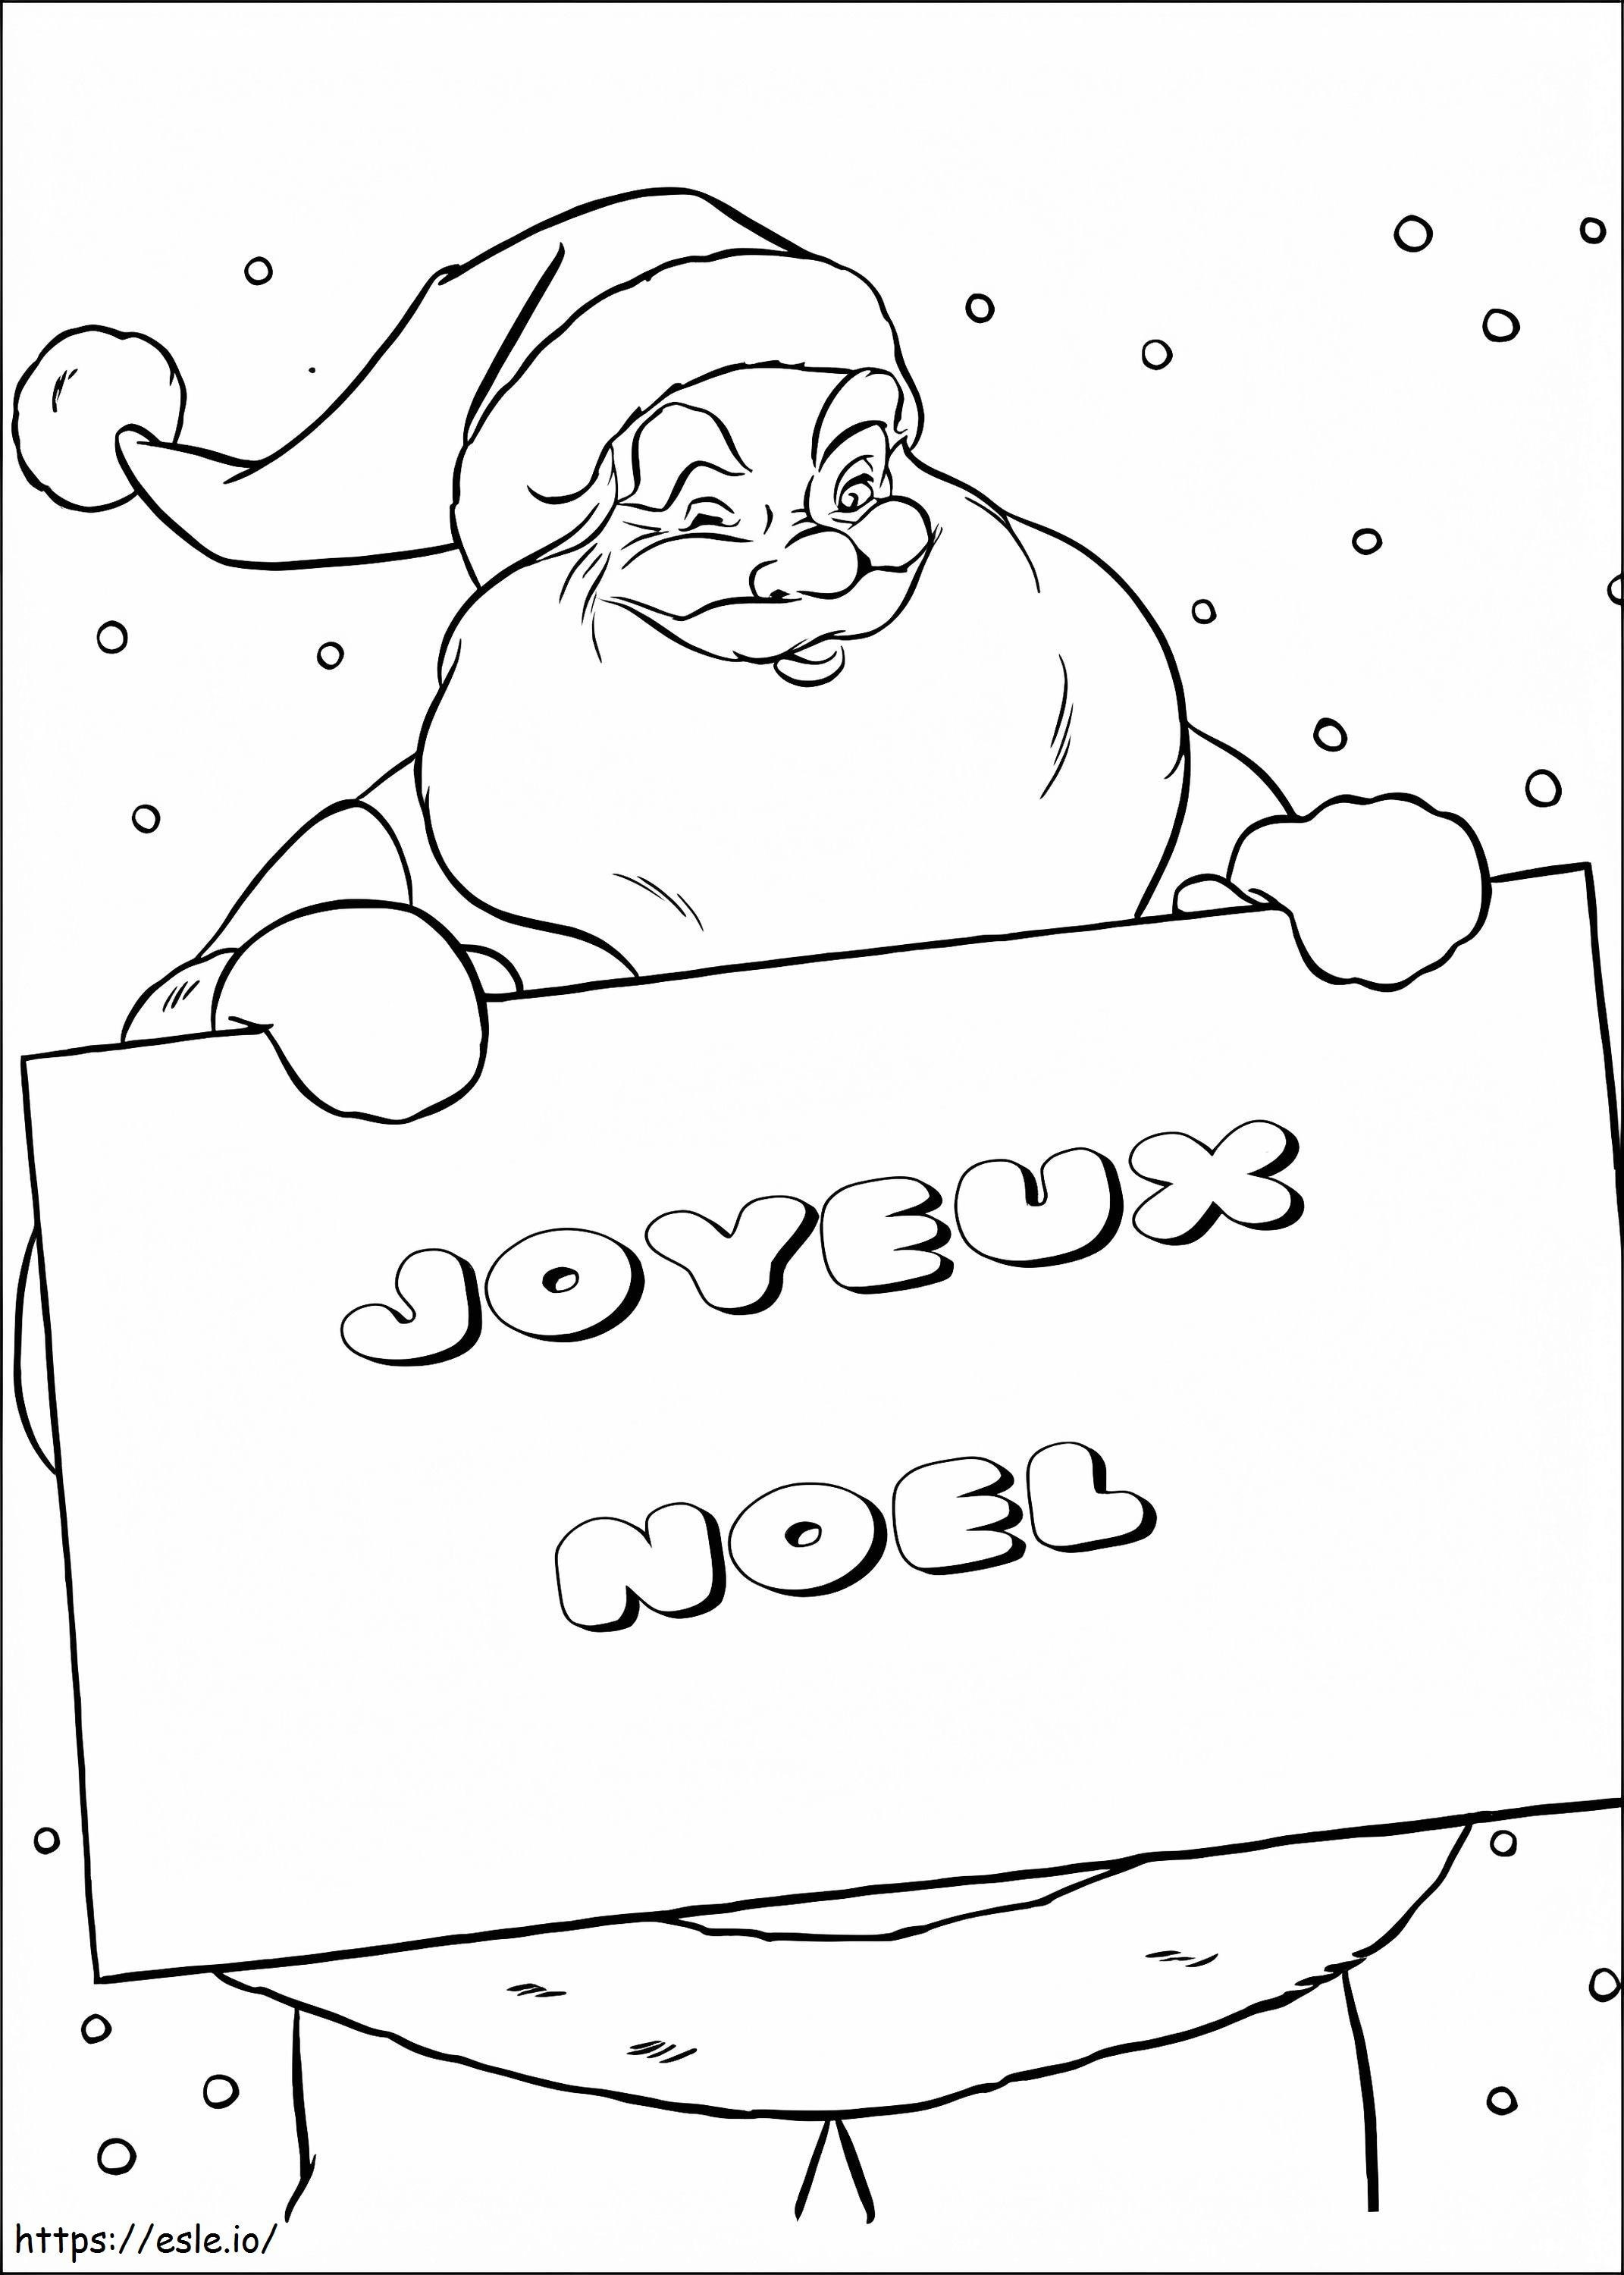 Coloriage Joyeux Noël 6 à imprimer dessin